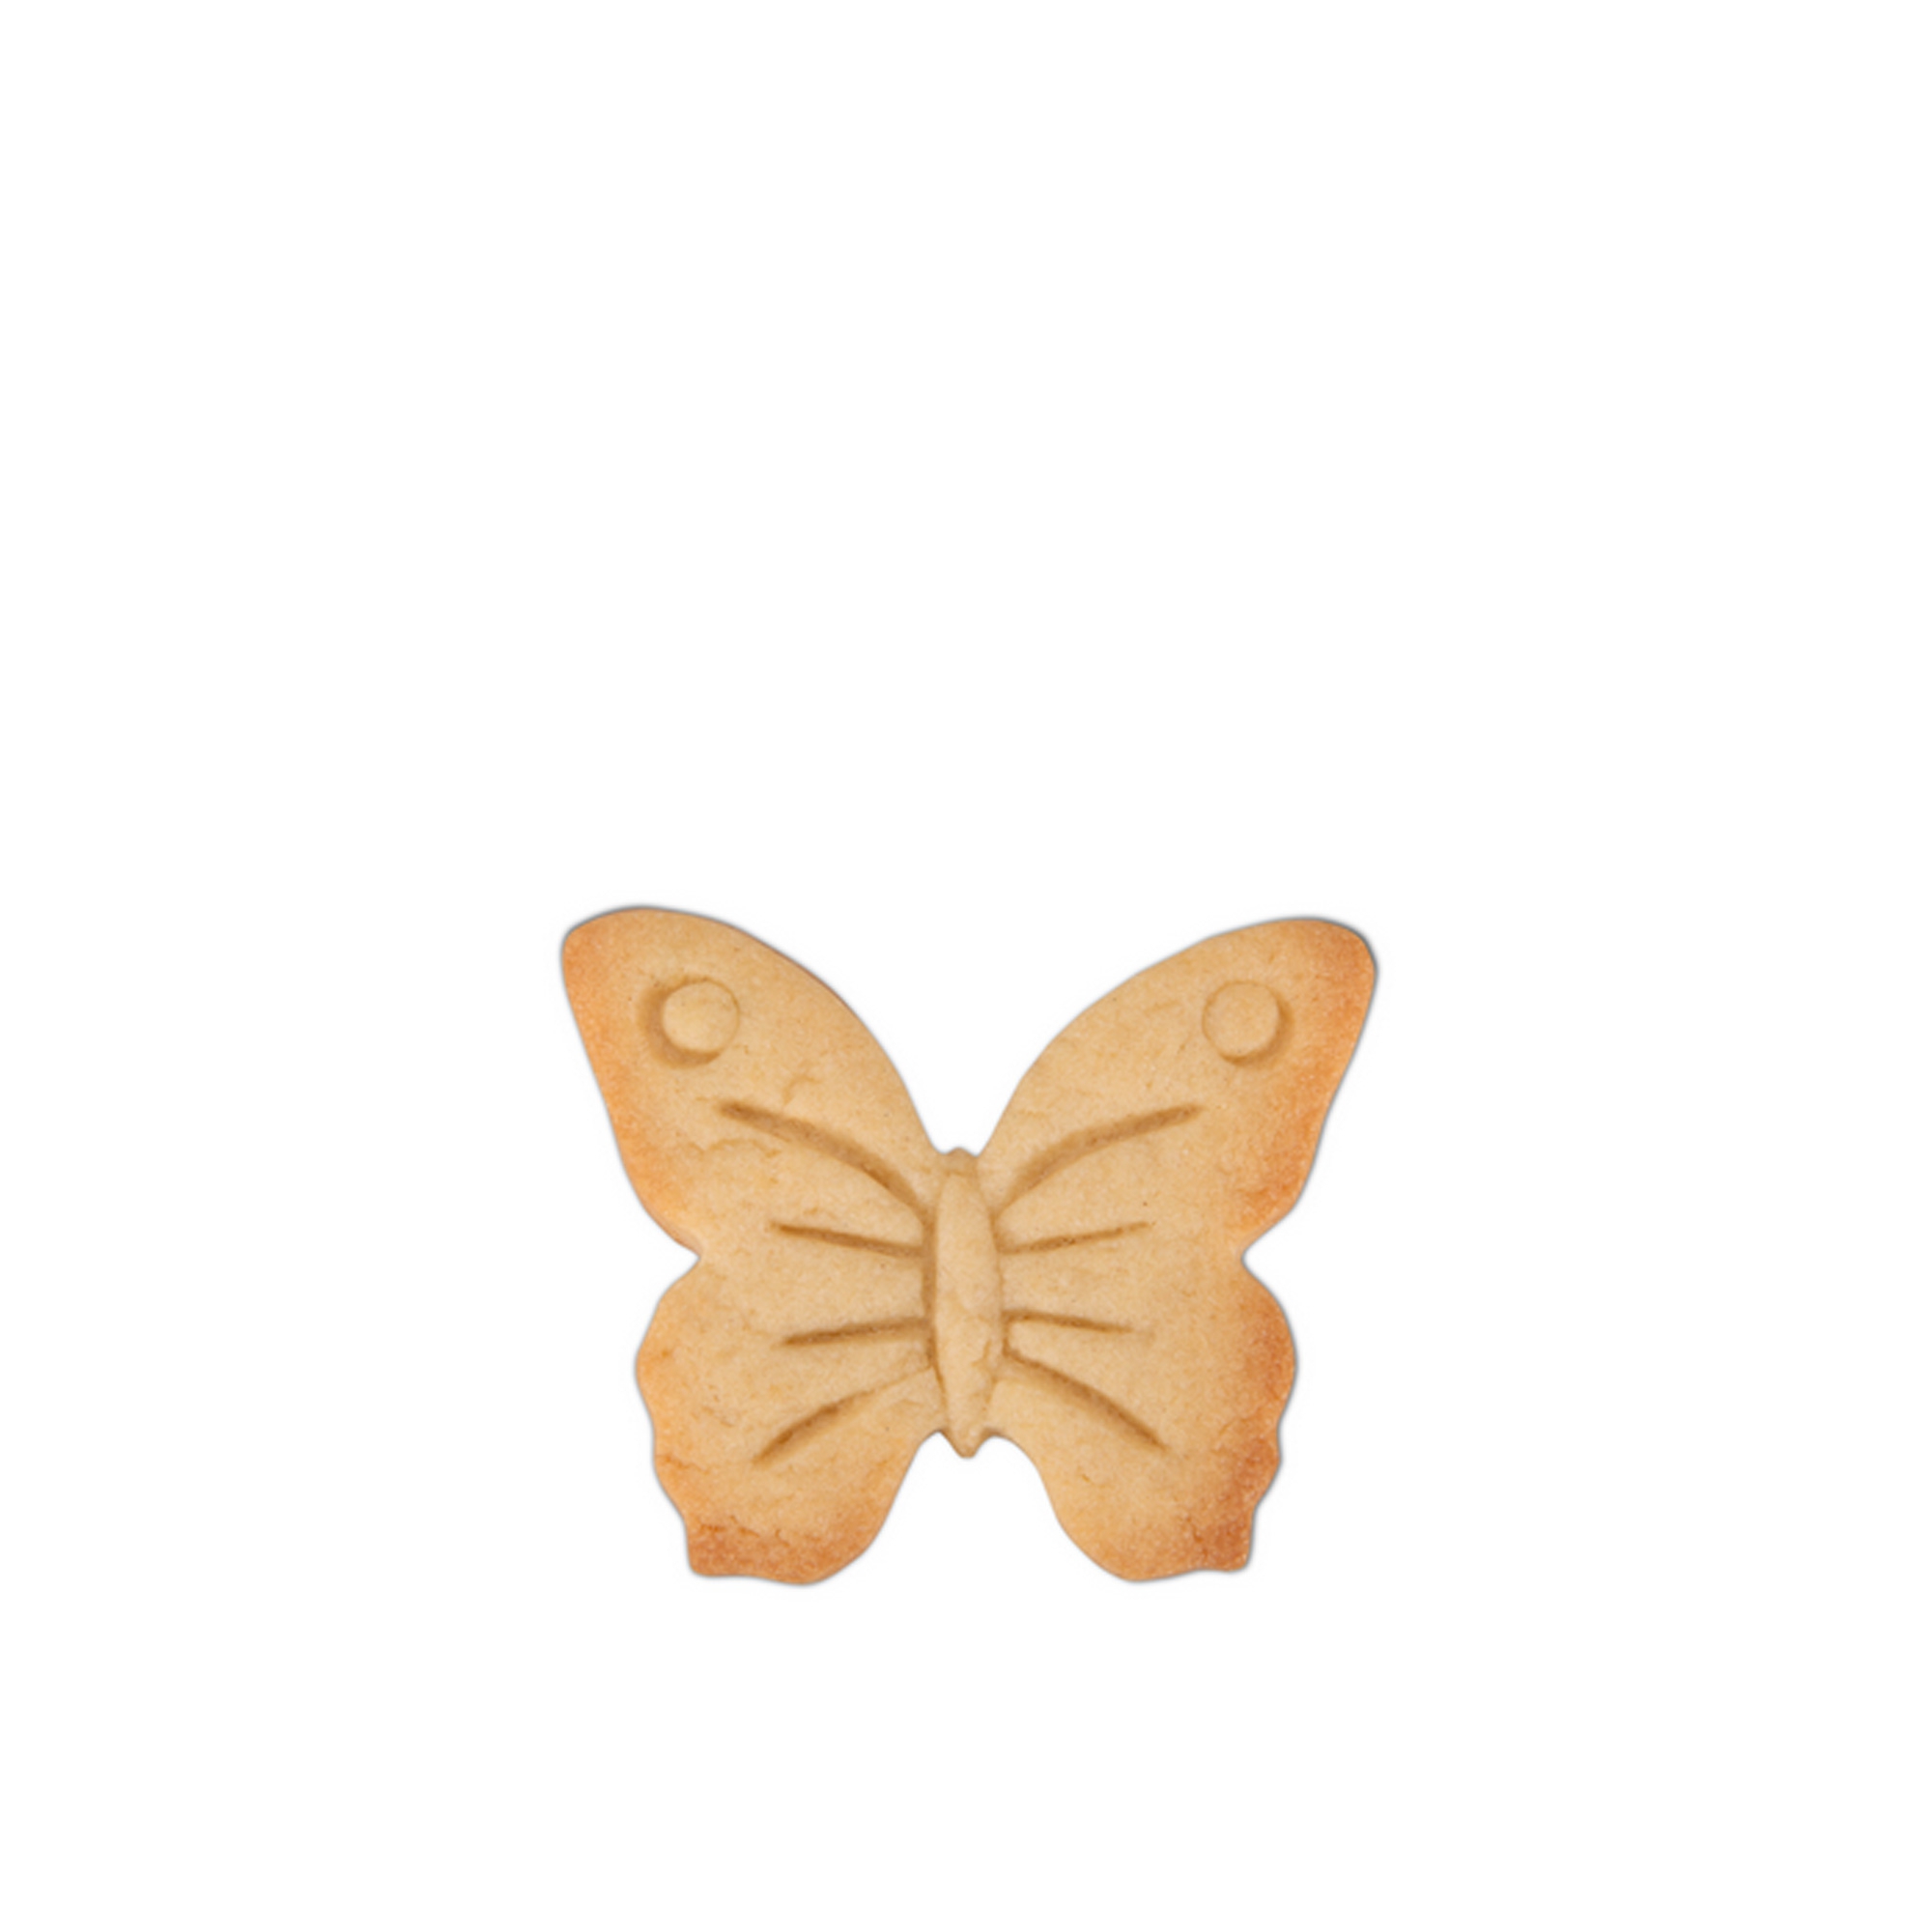 Städter - Ausstecher Schmetterling Edelstahl 7cm